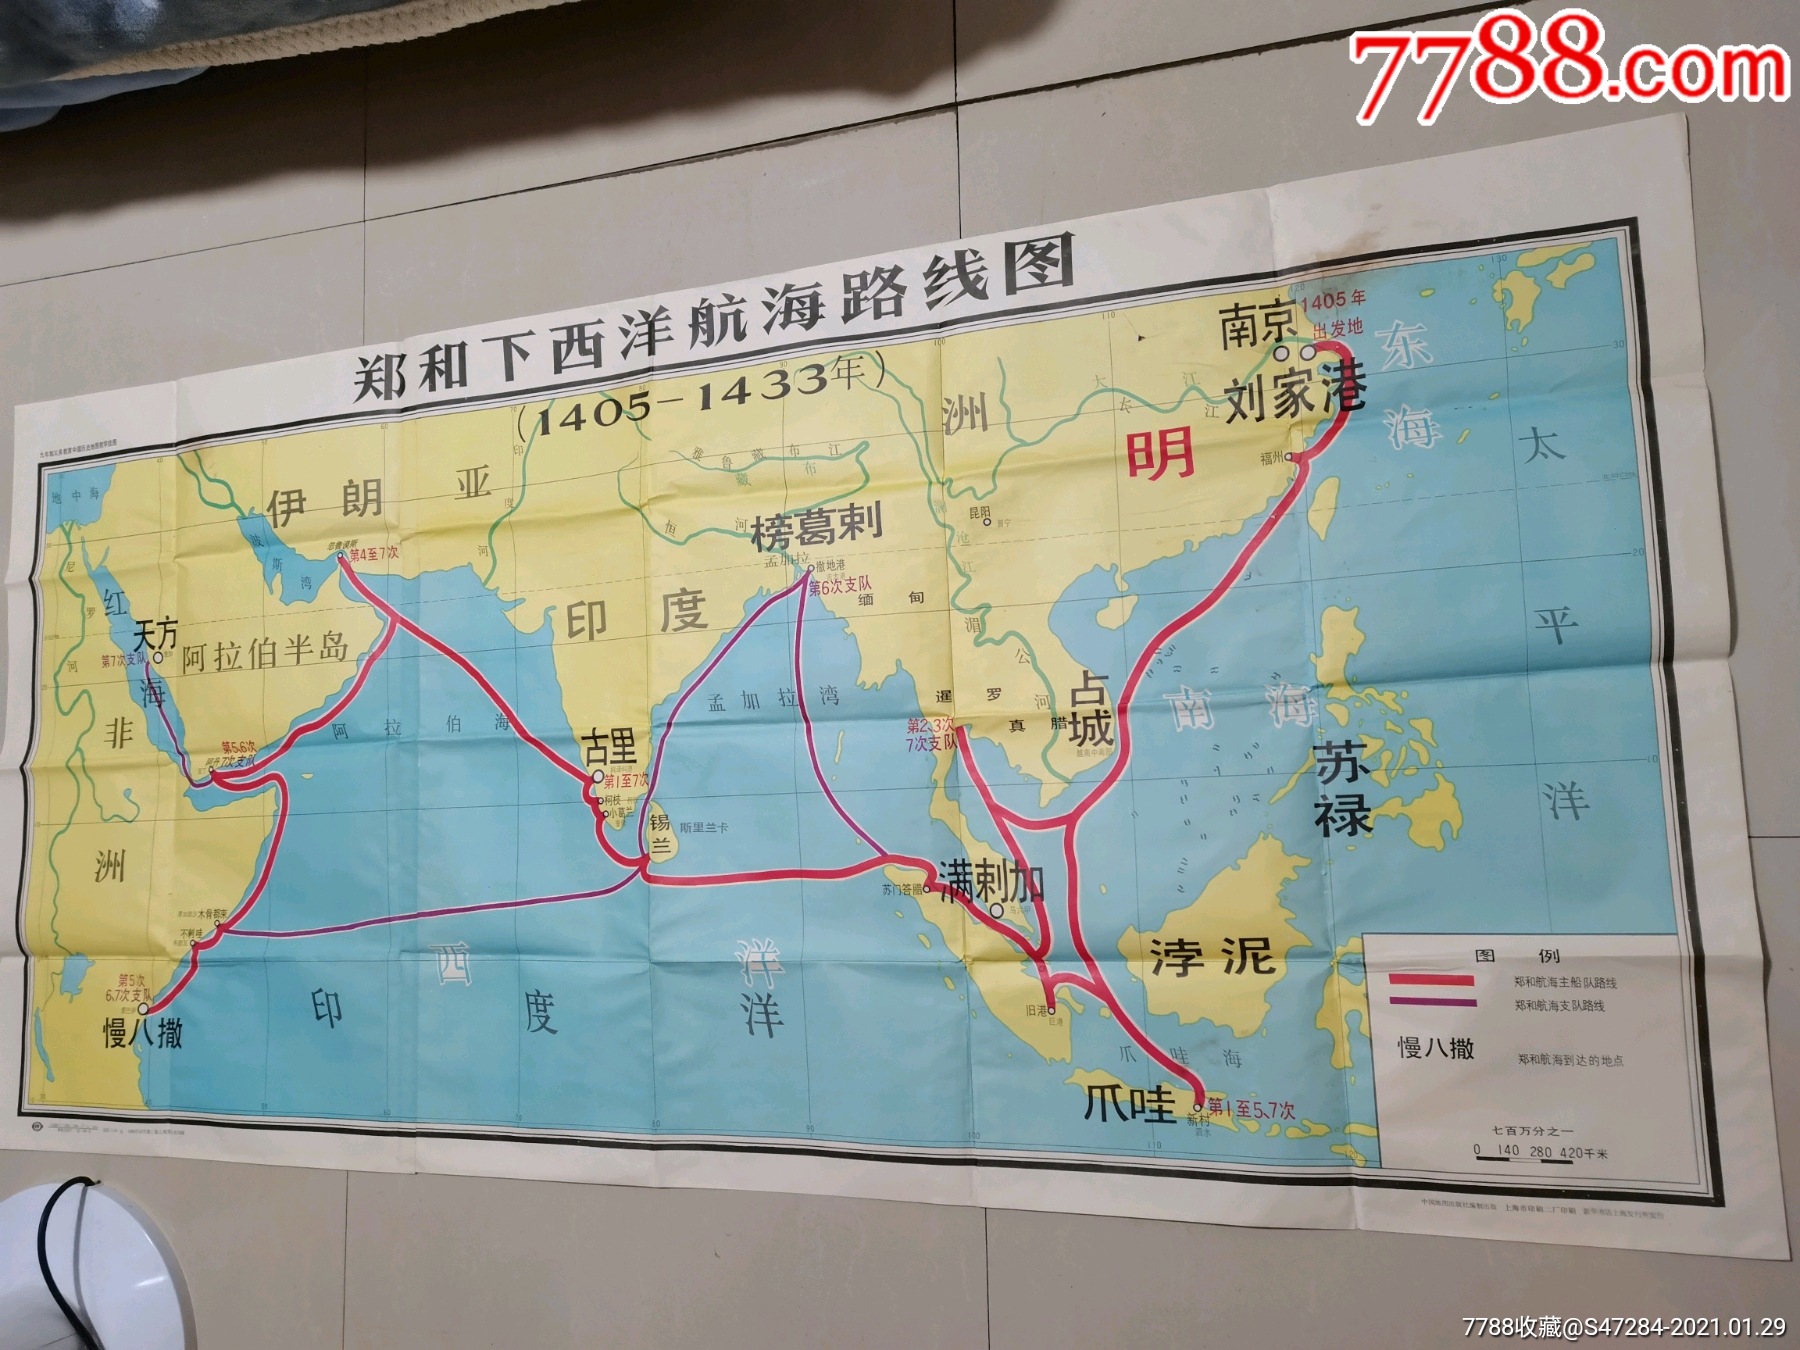 郑和下西洋航海路线图,尺寸156*76cm